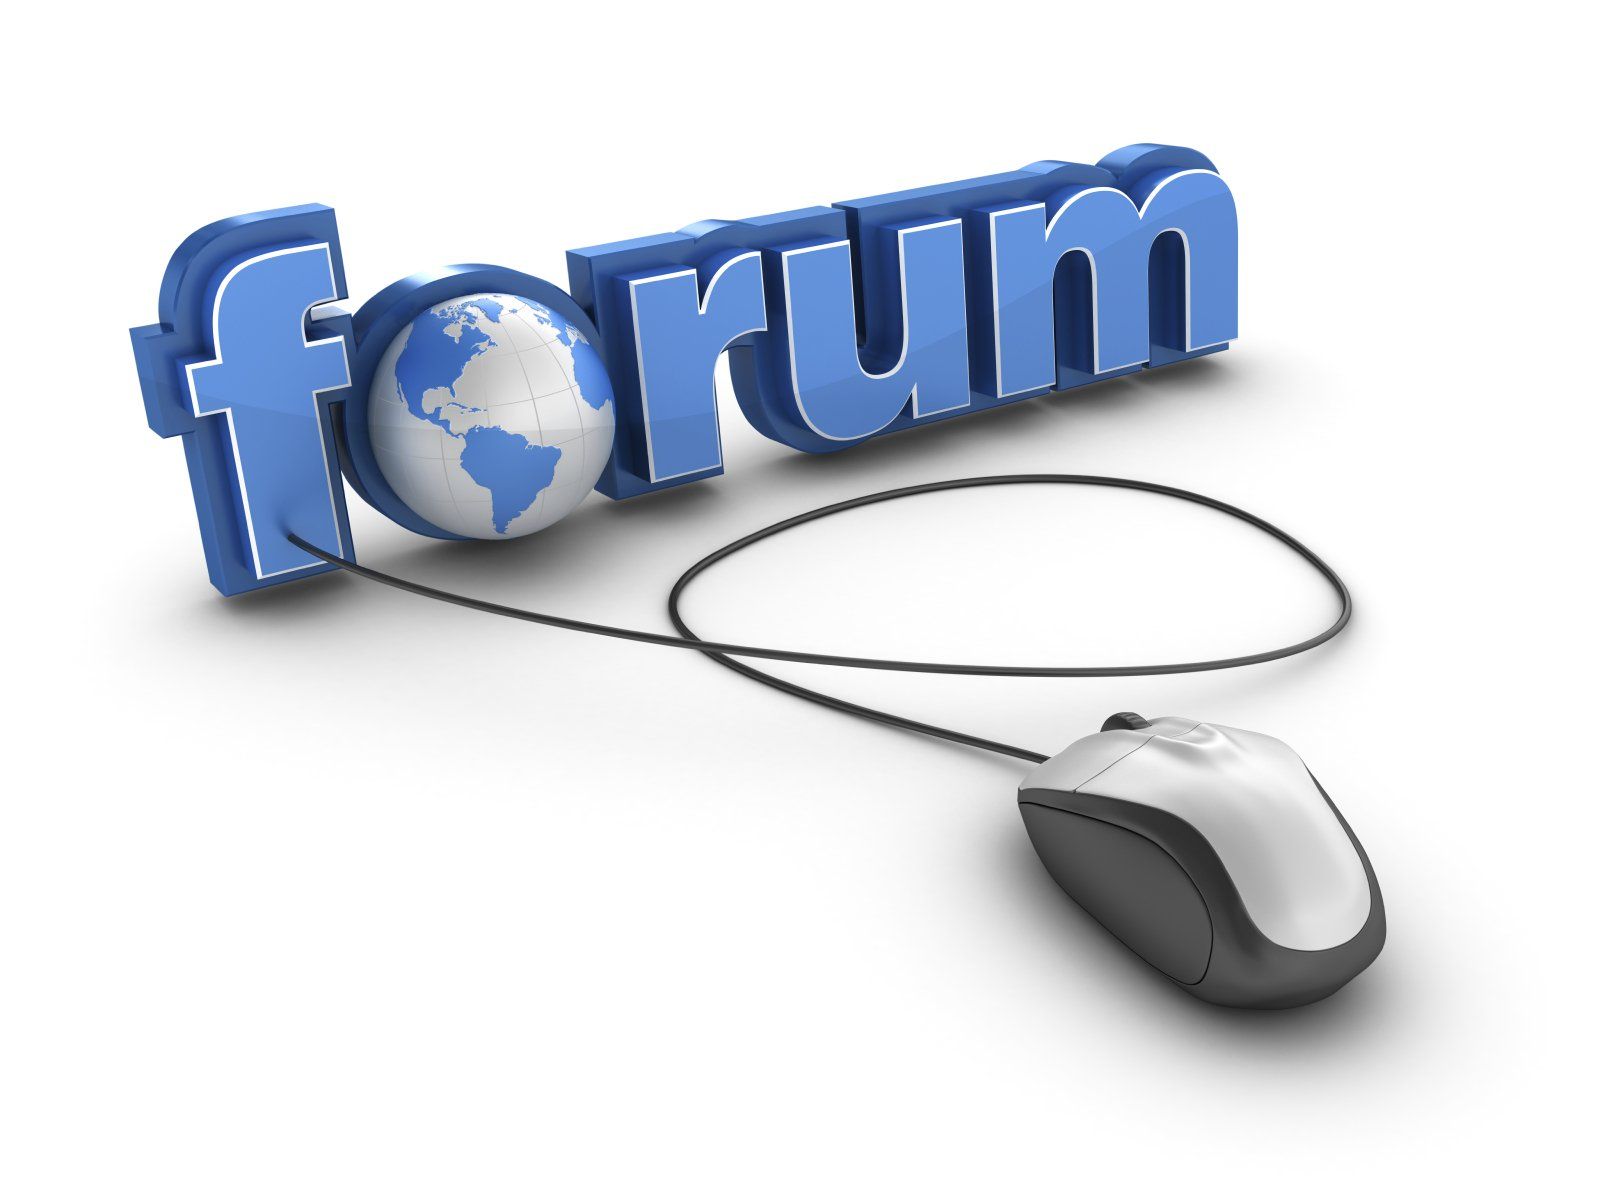 Forums vkmonline com. Интернет форум. Веб форум. Блоги и форумы. Веб форум картинки.